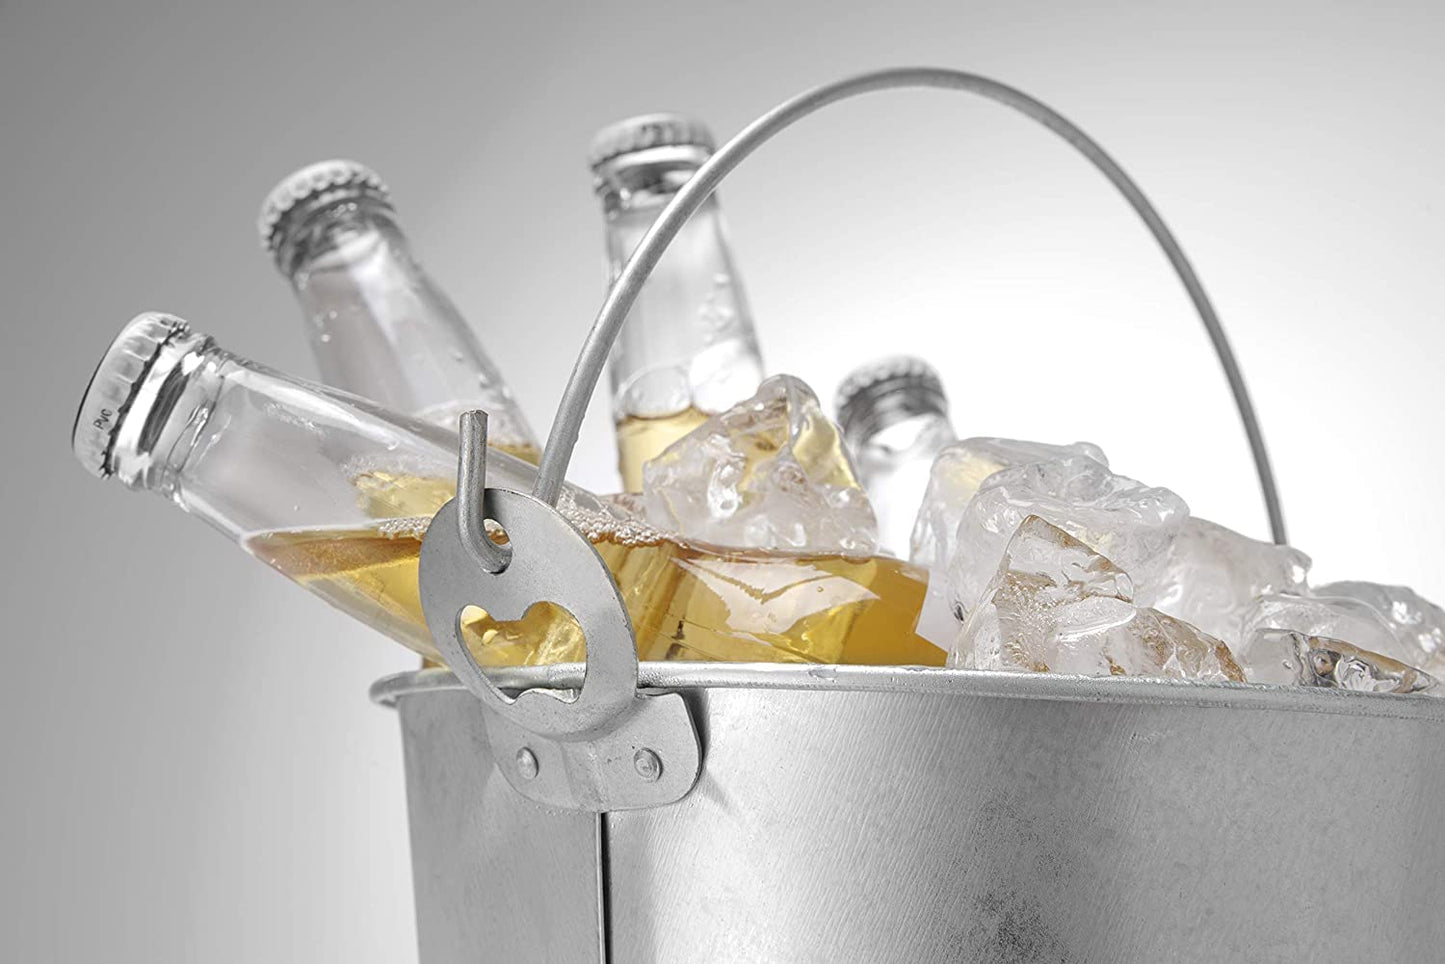 Rudra Exports Beer Bucket, Galvanised Beer Bucket Built-in Bottle Opener, Party Bucket, Ice Bucket, Wine Bucket, Bar Bucket, Beer Bucket for Party: 1 Pc.